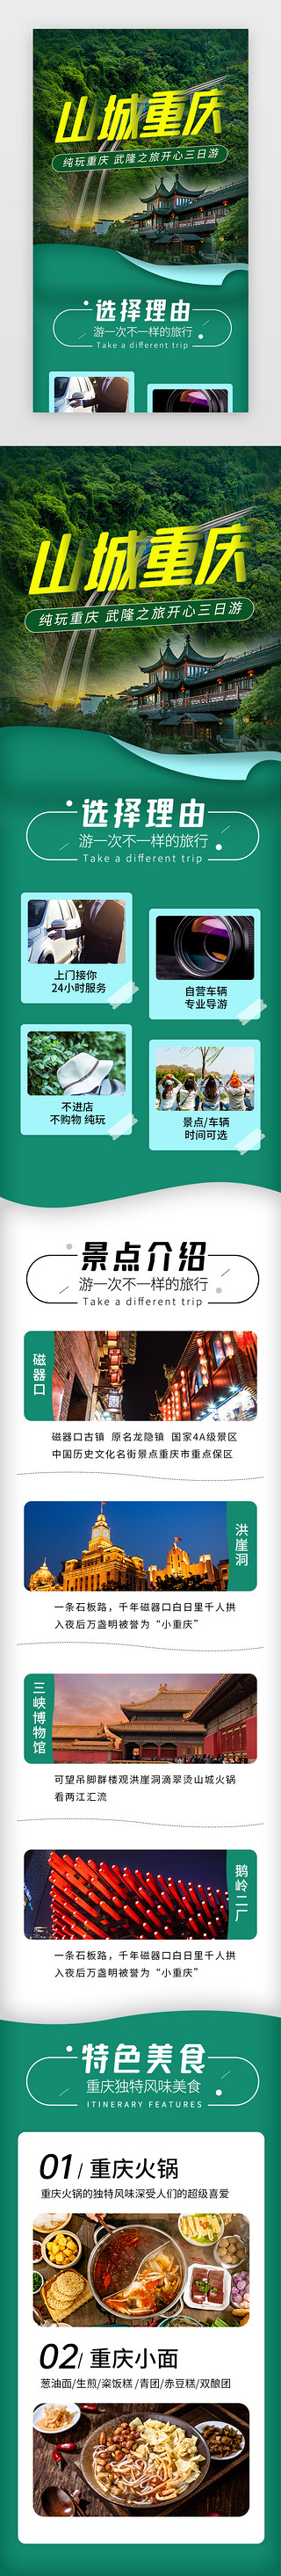 图文介绍UI设计素材_山城重庆旅游景点介绍H5长图